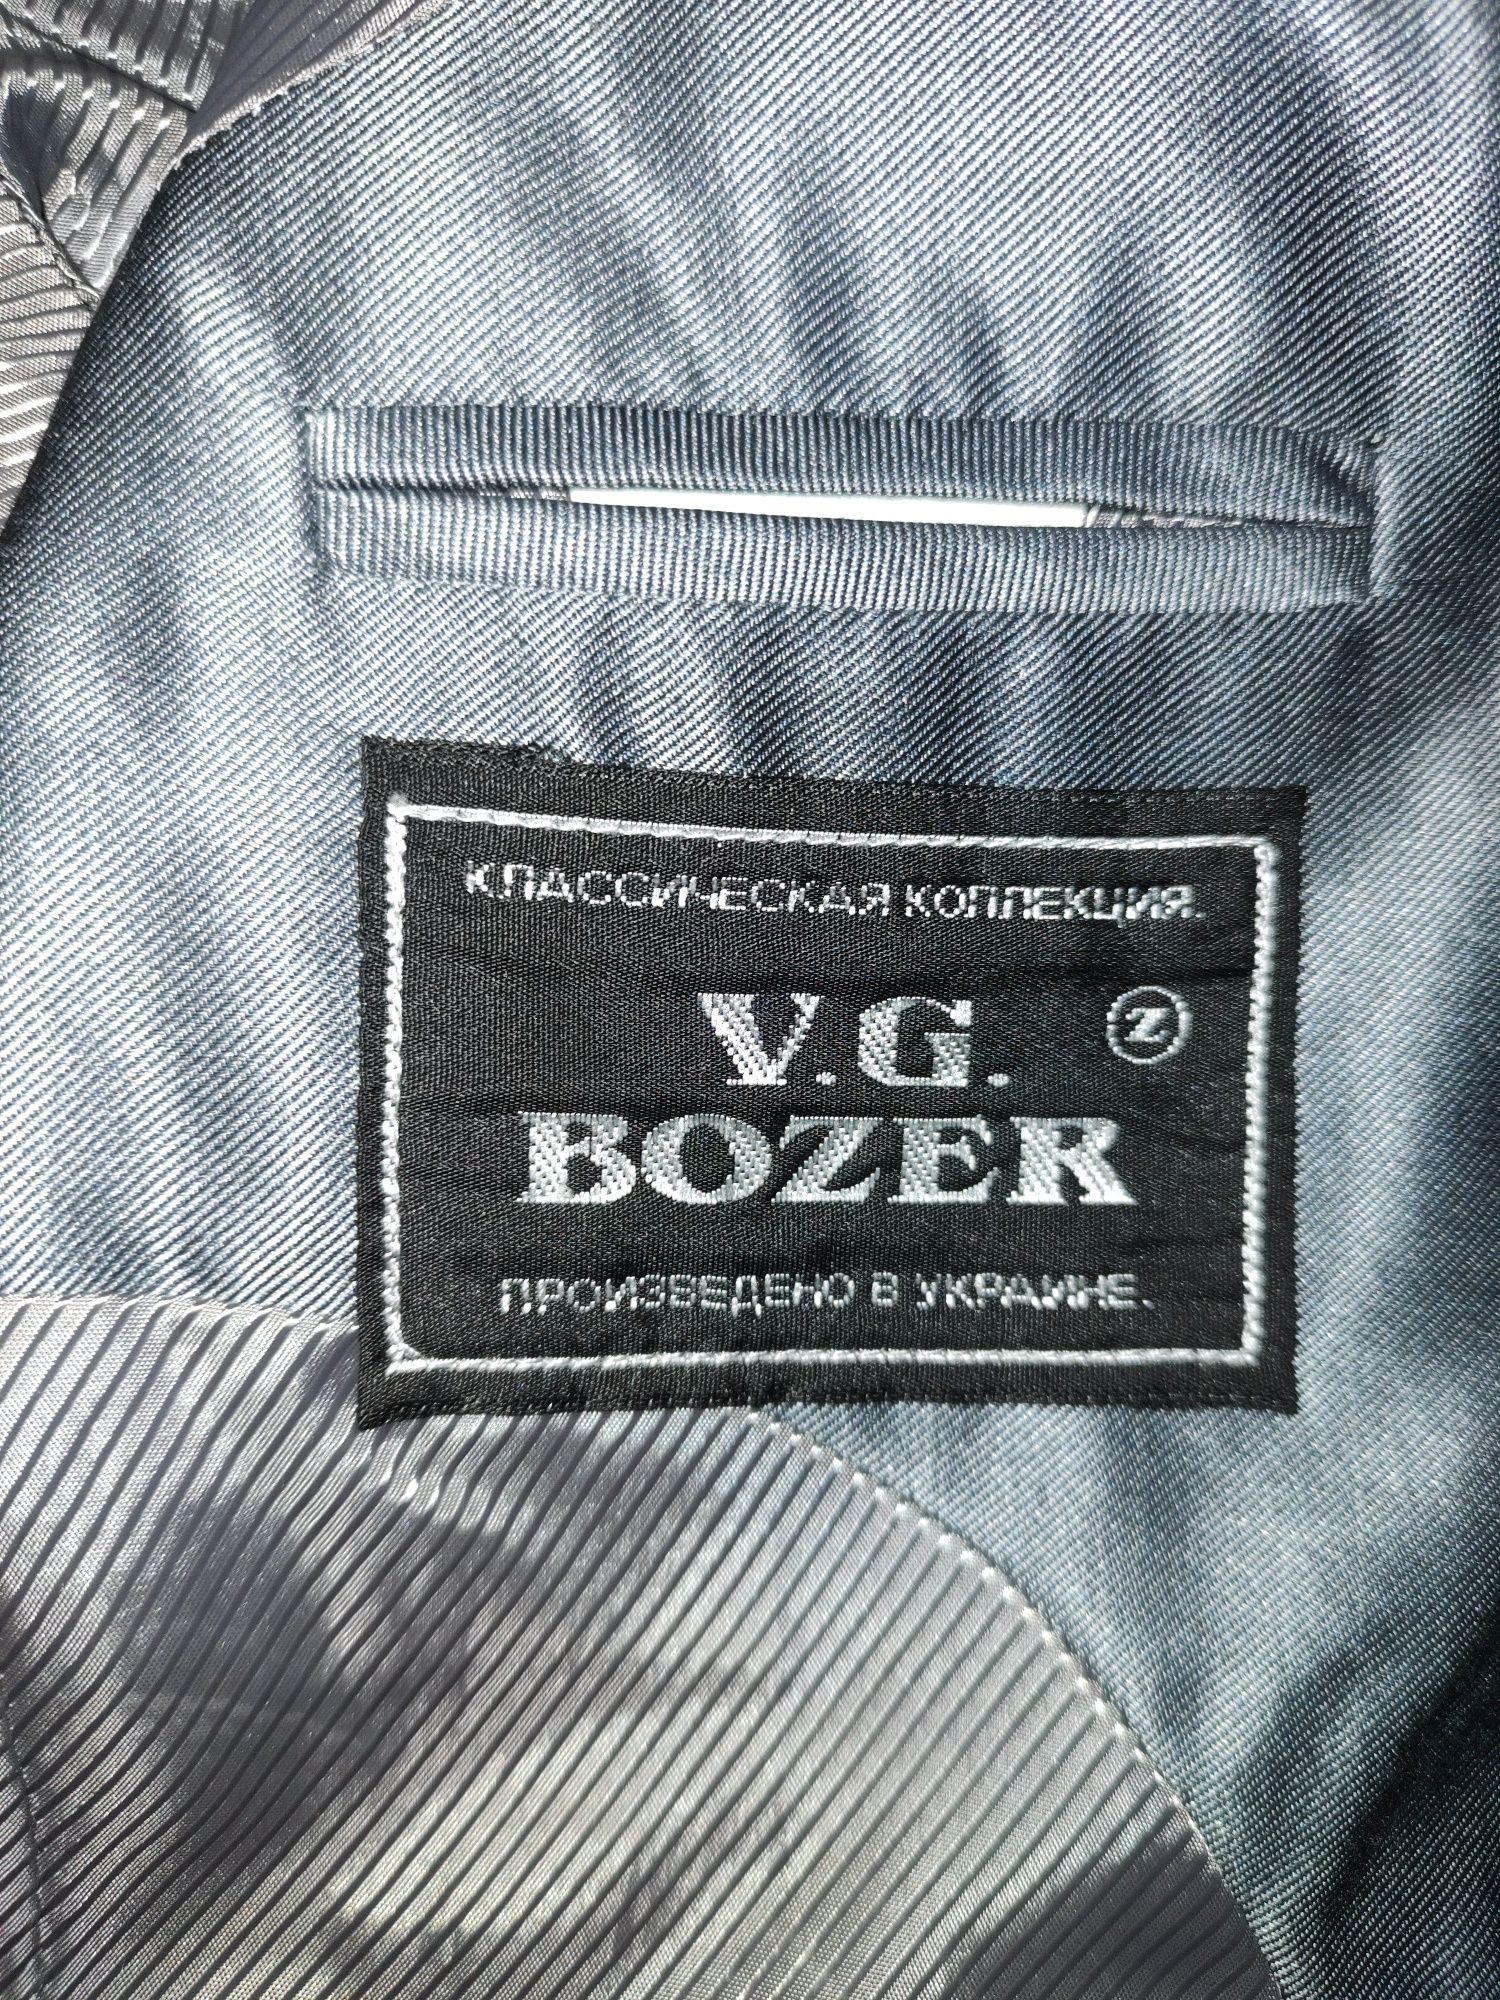 Школьный костюм   V.G BOZER